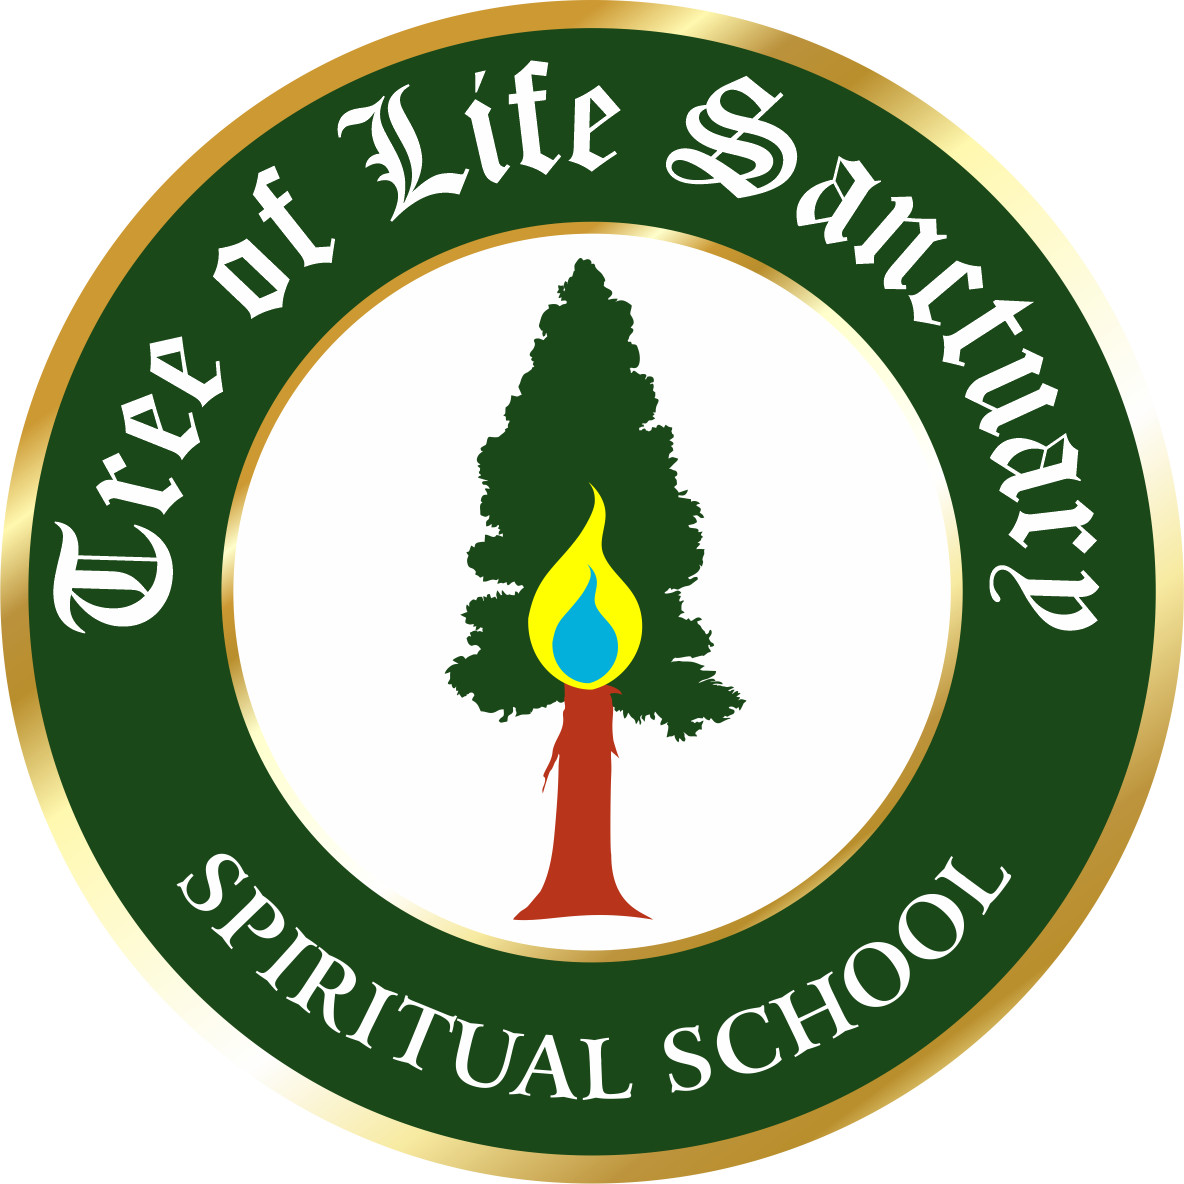 Tree of Life Sanctuary